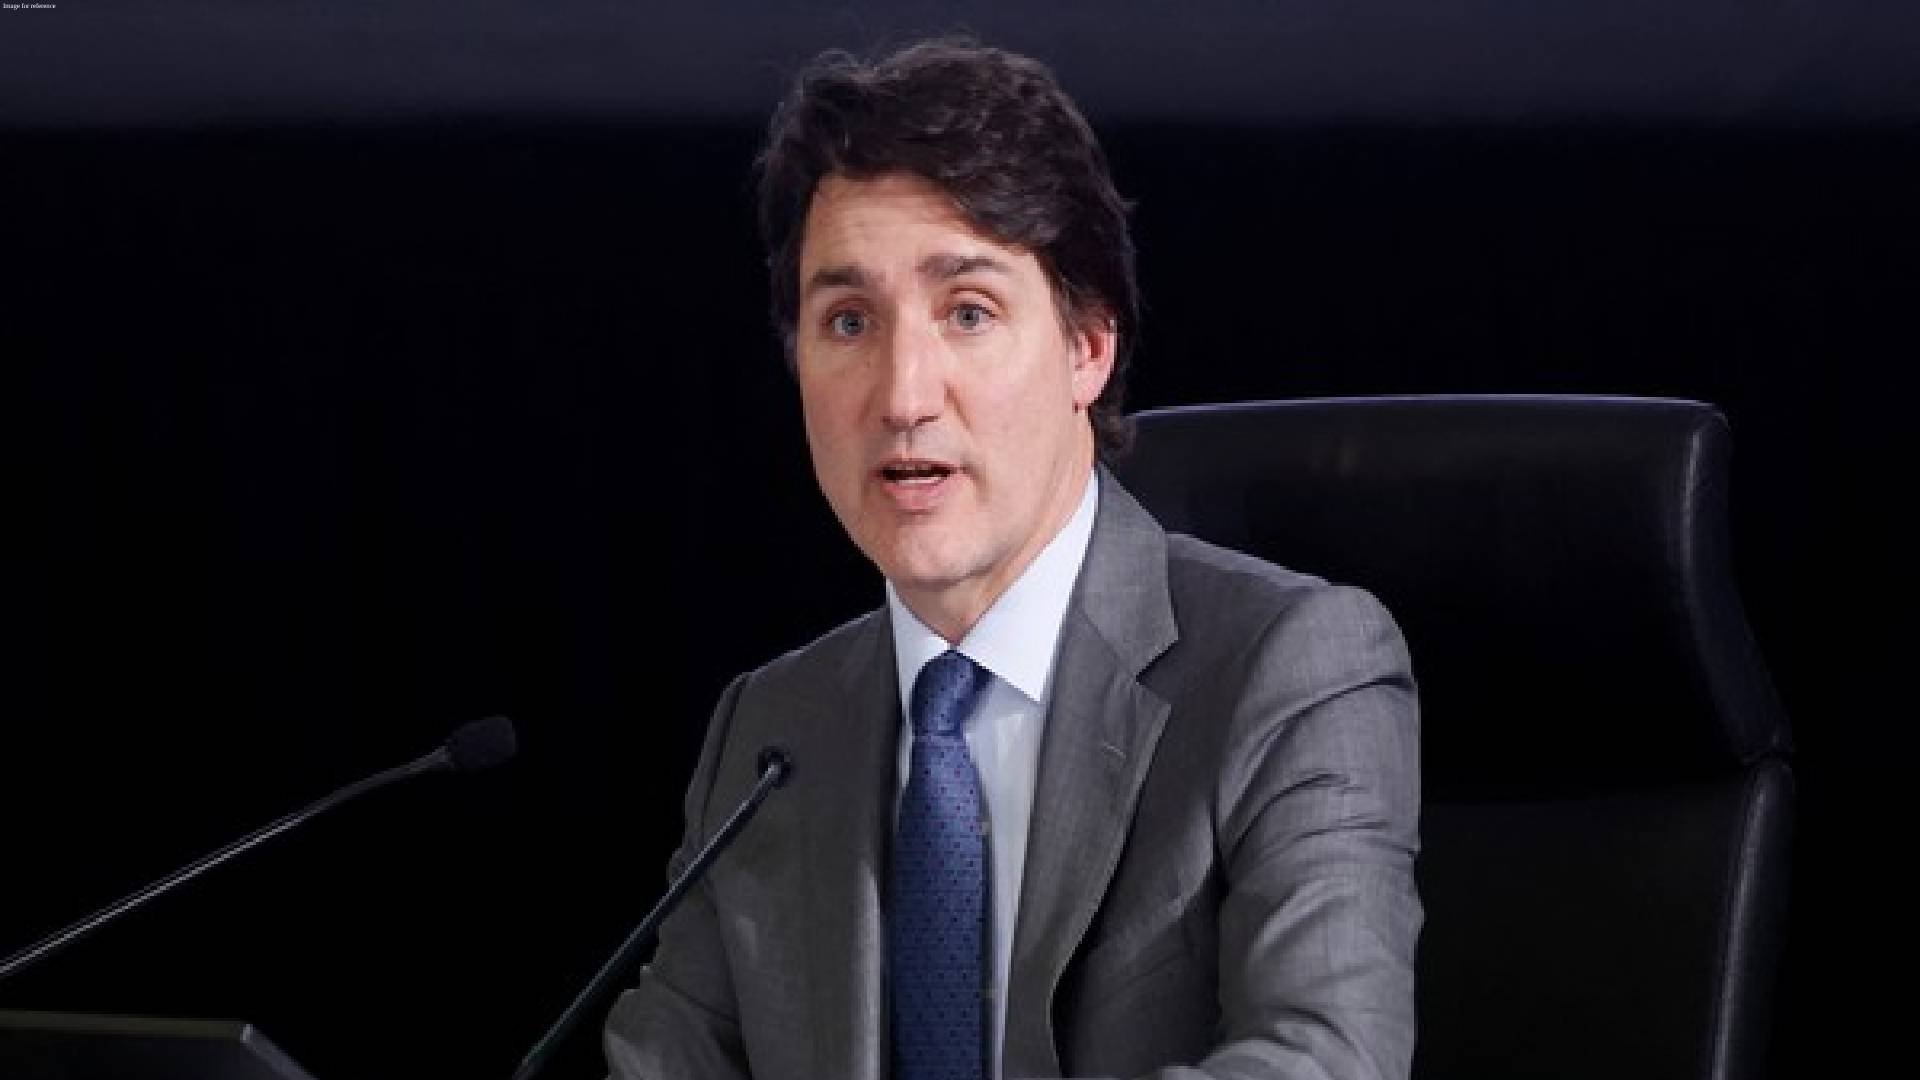 On Nijjar killing, Justin Trudeau tells public inquiry panel, 